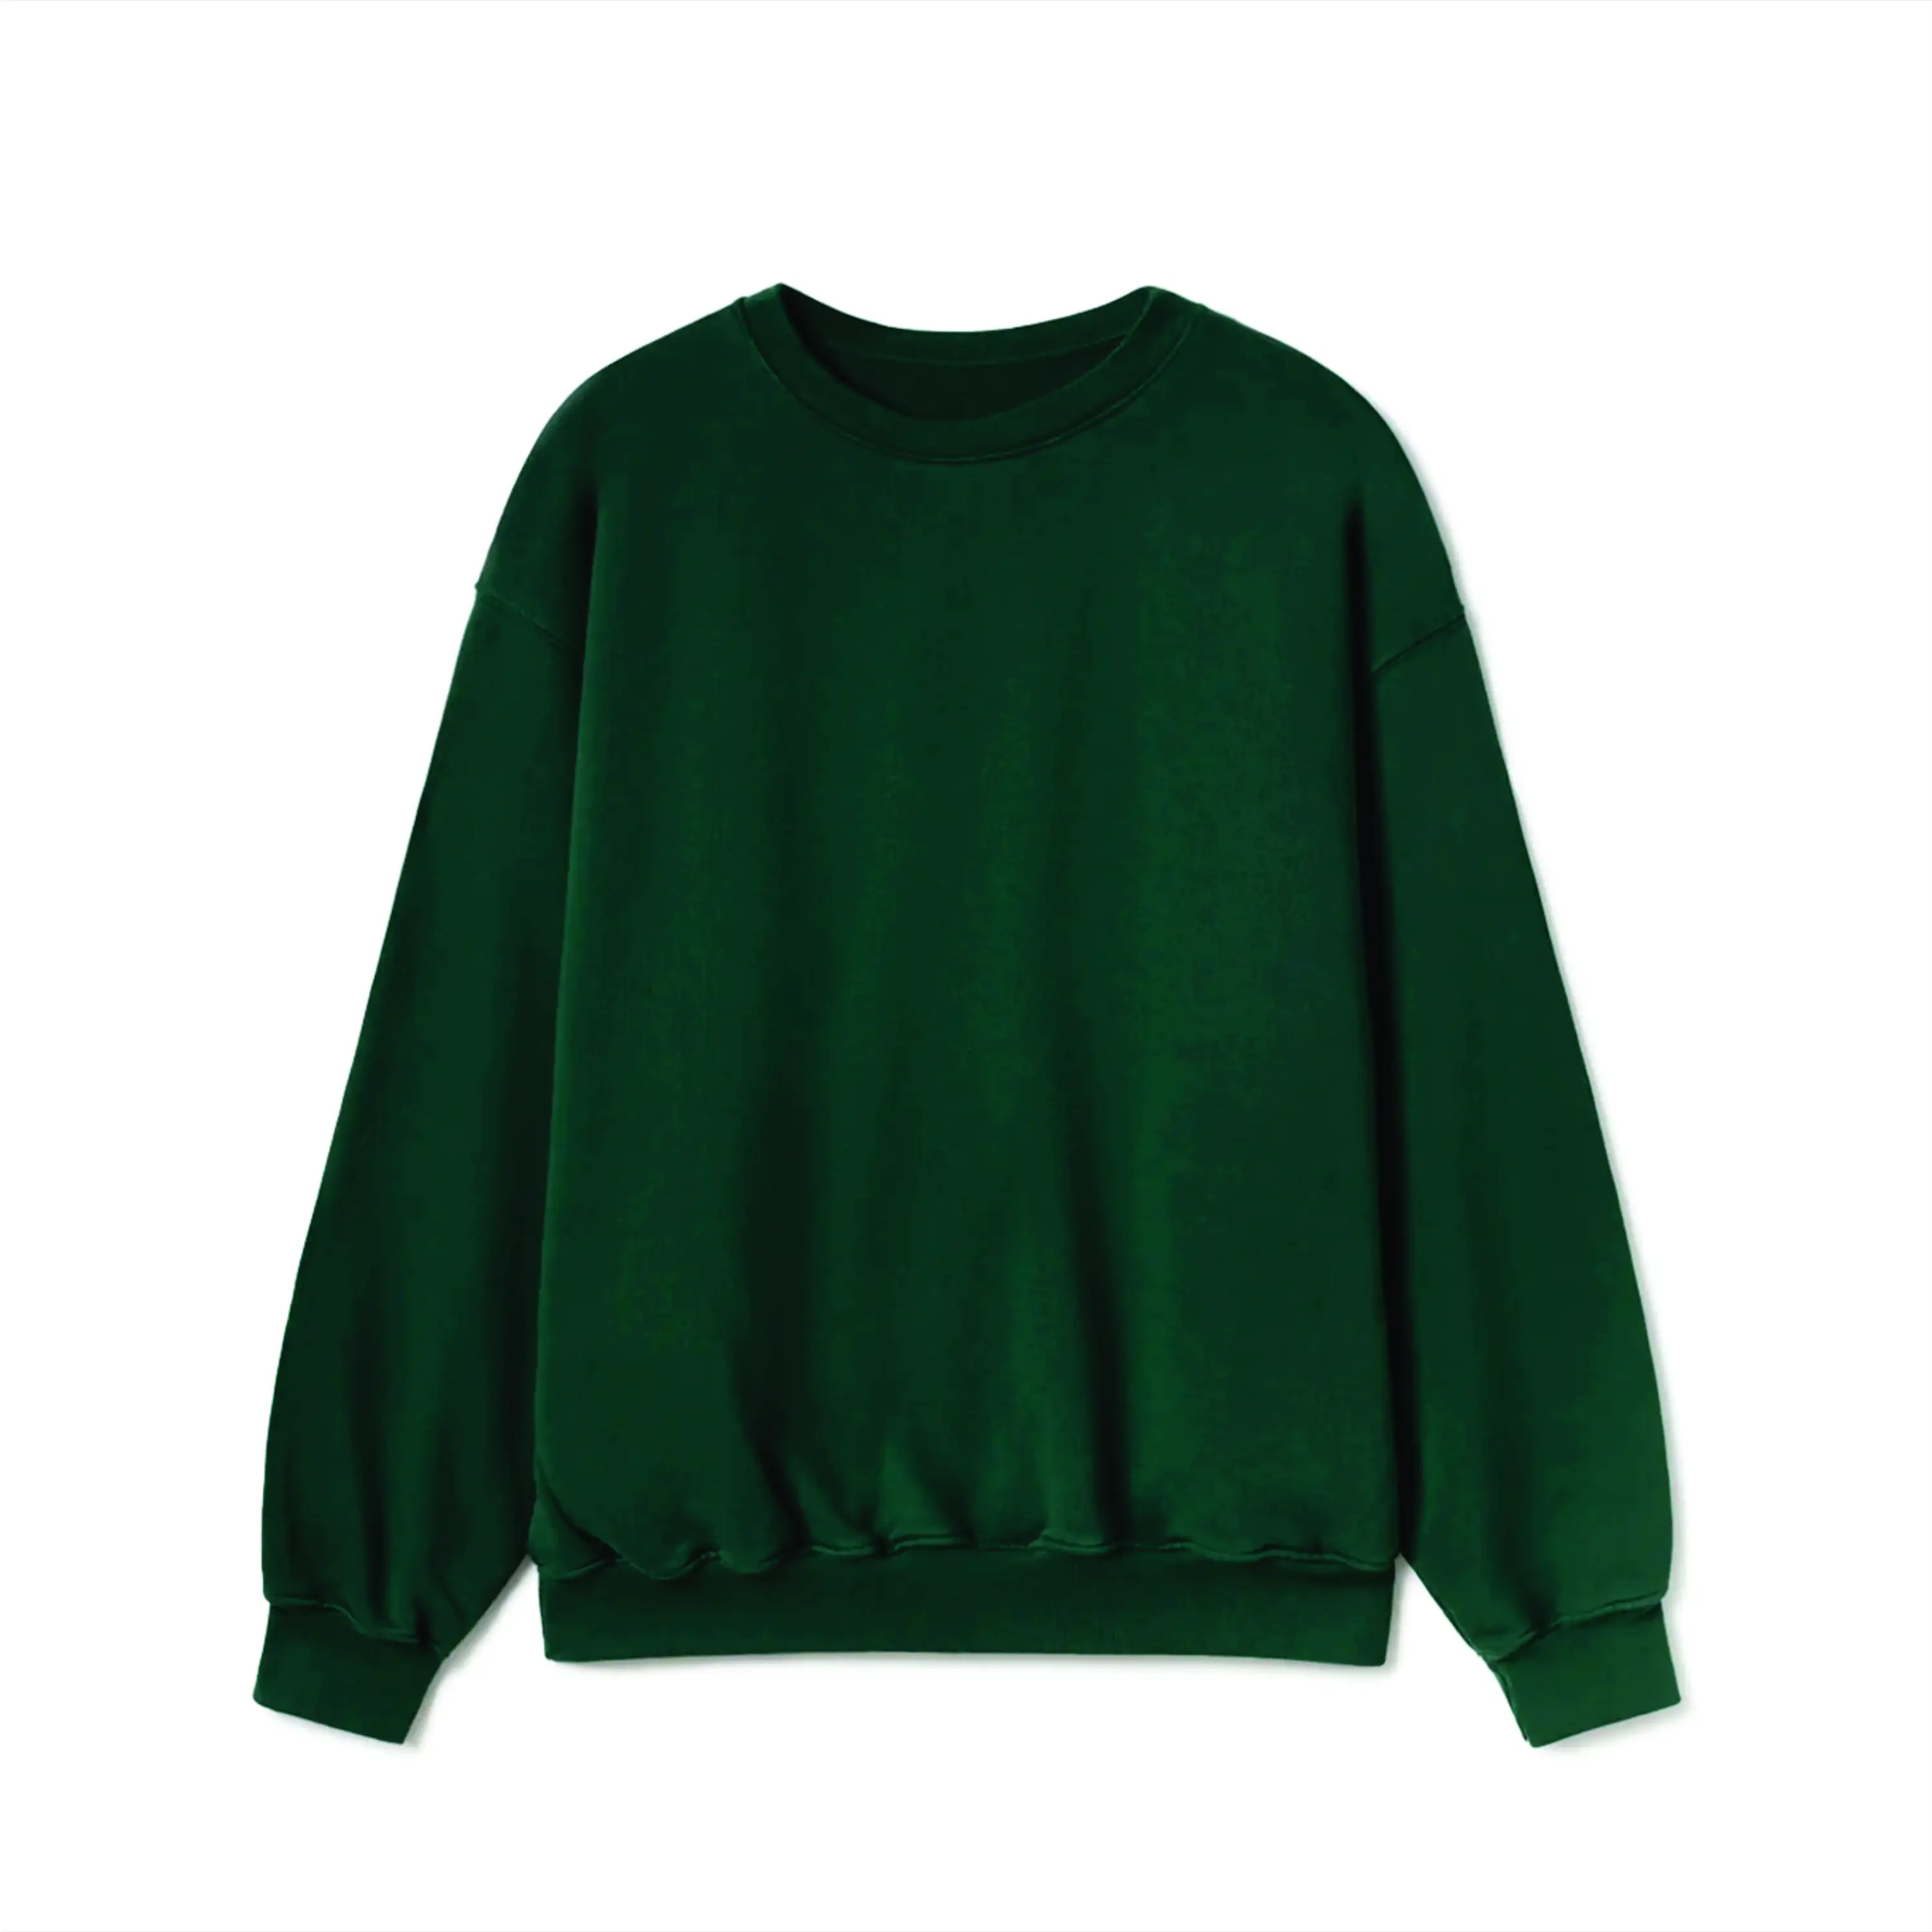 Warme und gemütliche Loose Fit 77% Baumwolle 23% recyceltes Polyester Fleece Jet Black Crewneck Sport Sweatshirt